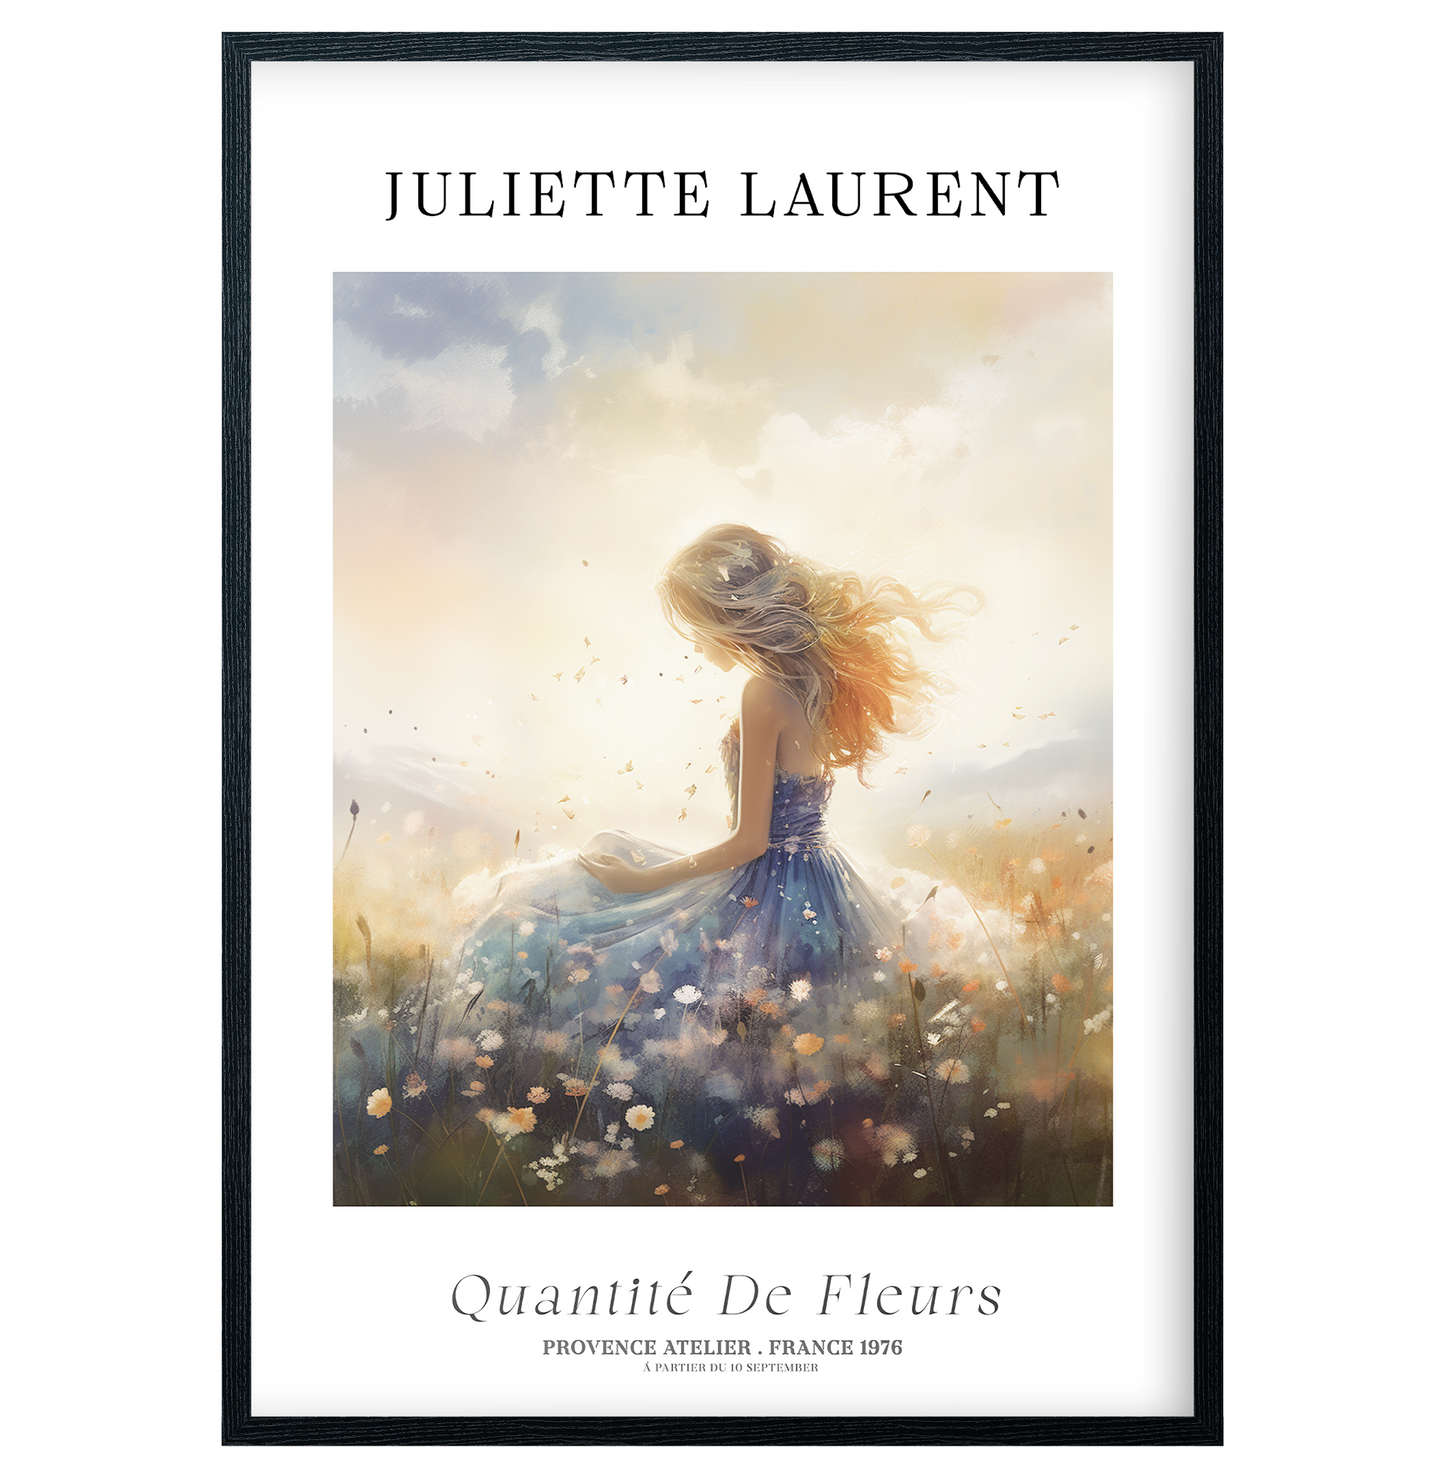 Juliette Laurent - Quantité De Fleurs